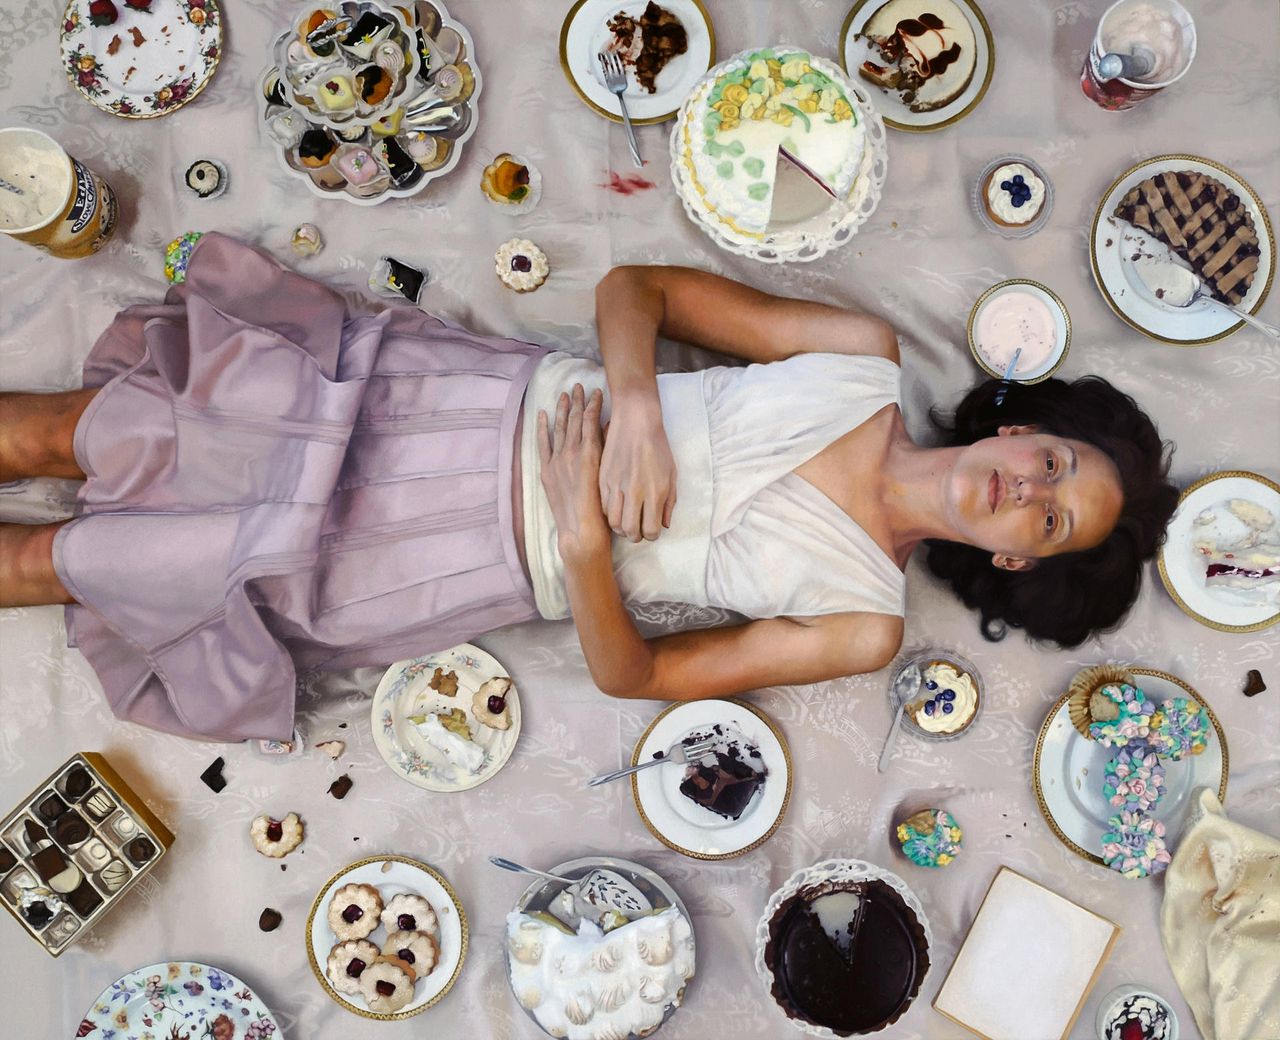 Vrouwen en hun relatie met voedsel zijn een vast thema in het realistische schilderwerk van Lee Price, zoals inFull. In een klassiek experiment naar zelfbeheersing moesten mensen koekjes weerstaan.